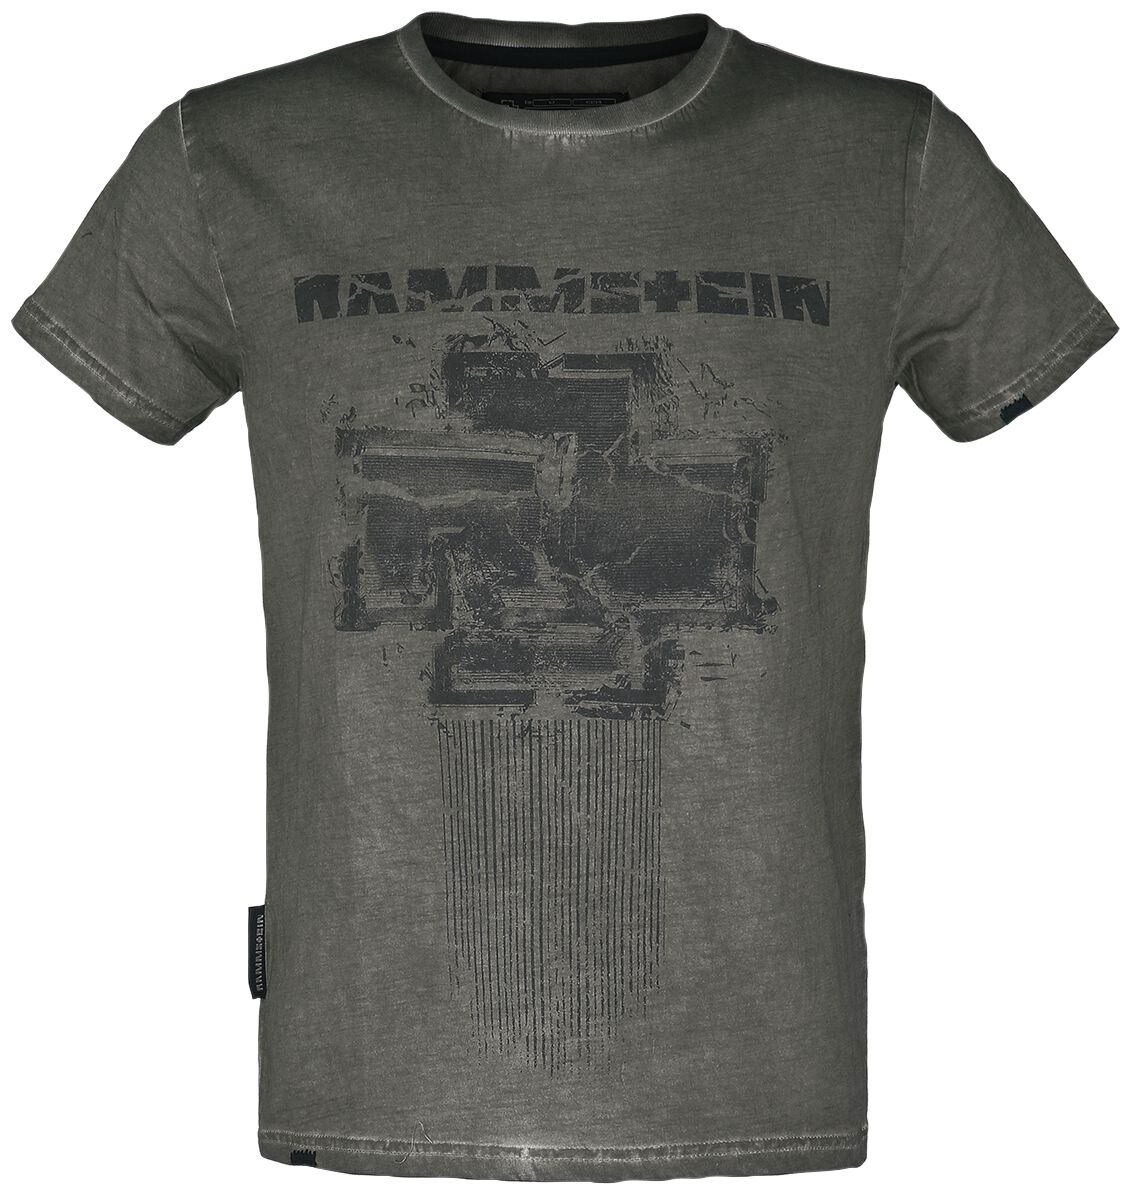 Rammstein T-Shirt - Broken Logo II - S bis 5XL - für Männer - Größe 5XL - oliv  - Lizenziertes Merchandise!